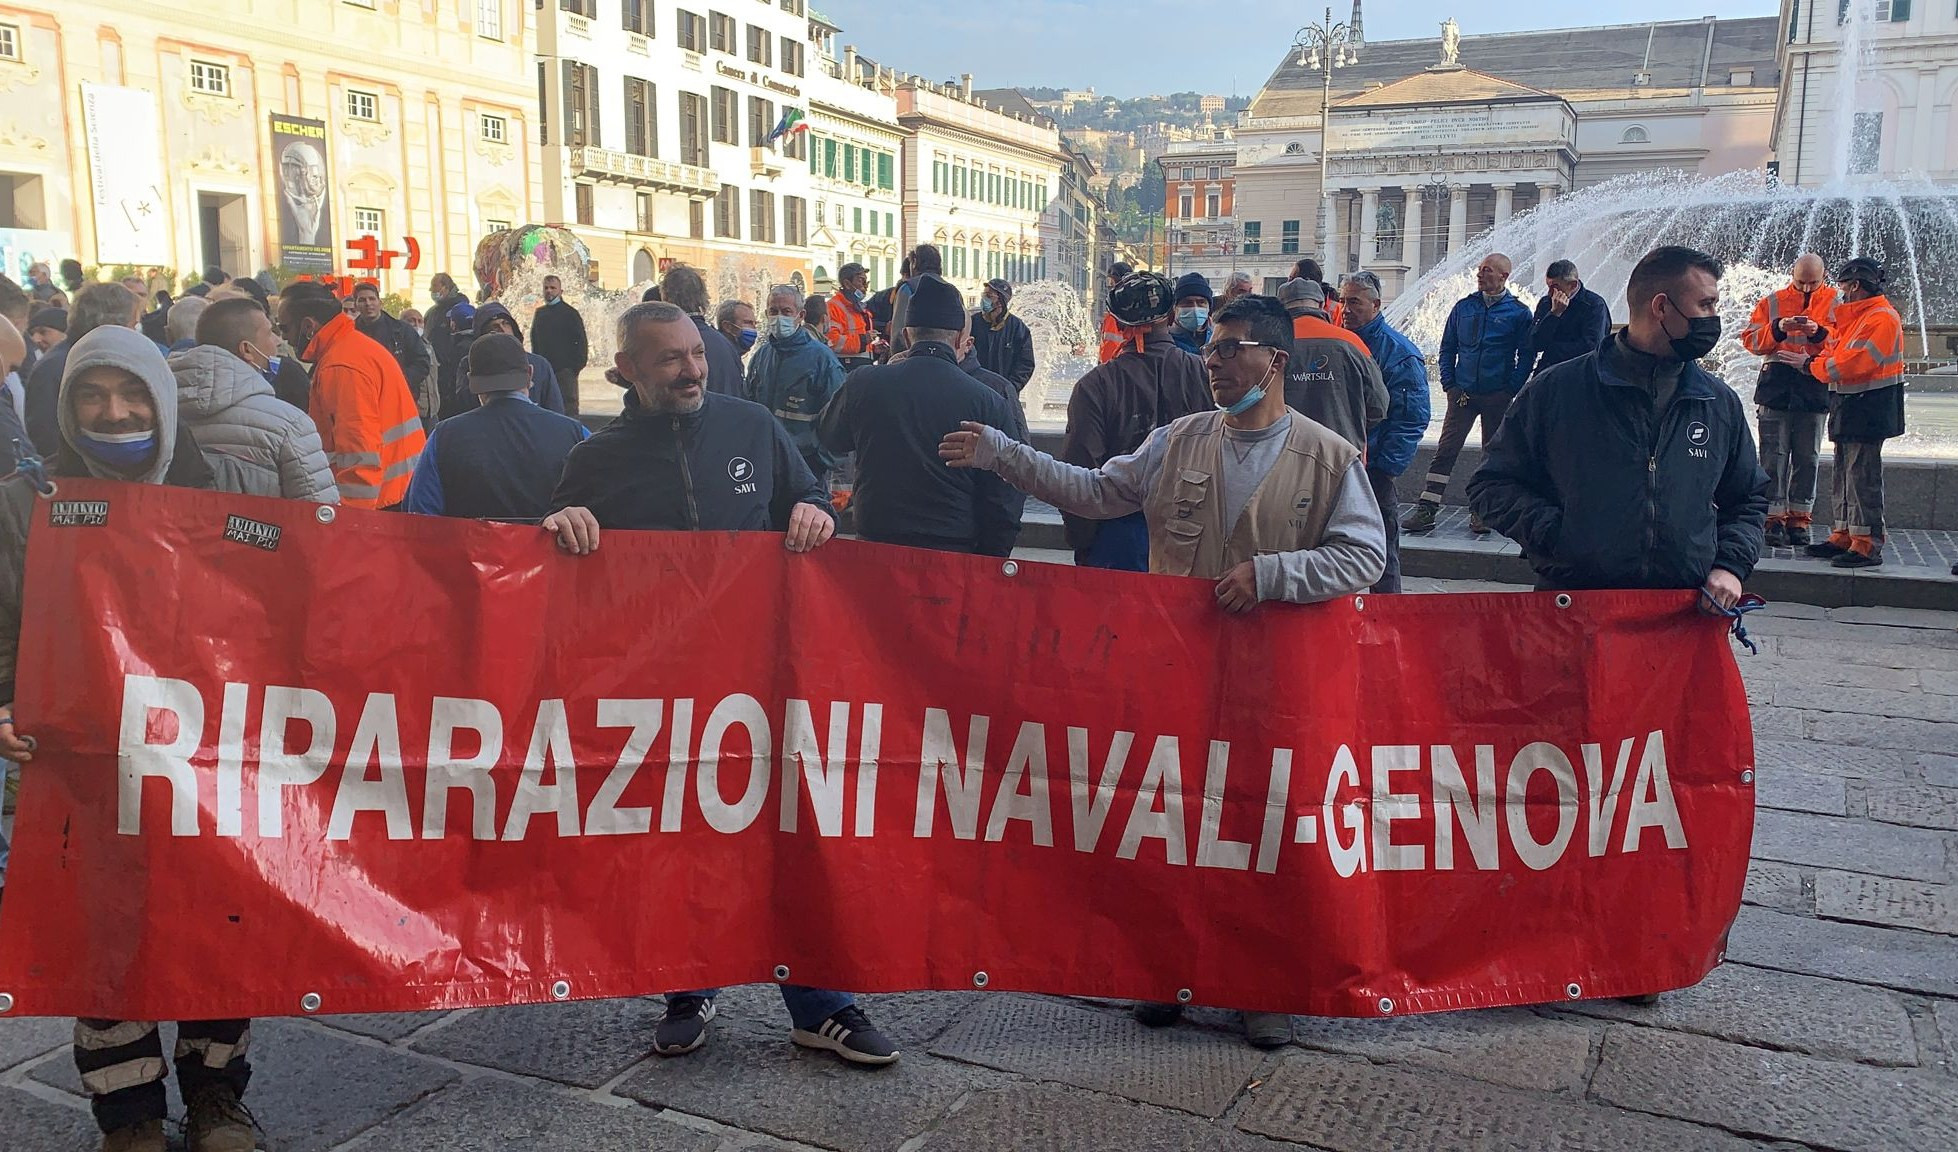 Riparazioni navali, corteo a Genova contro ipotesi spostamento: poi arriva il chiarimento